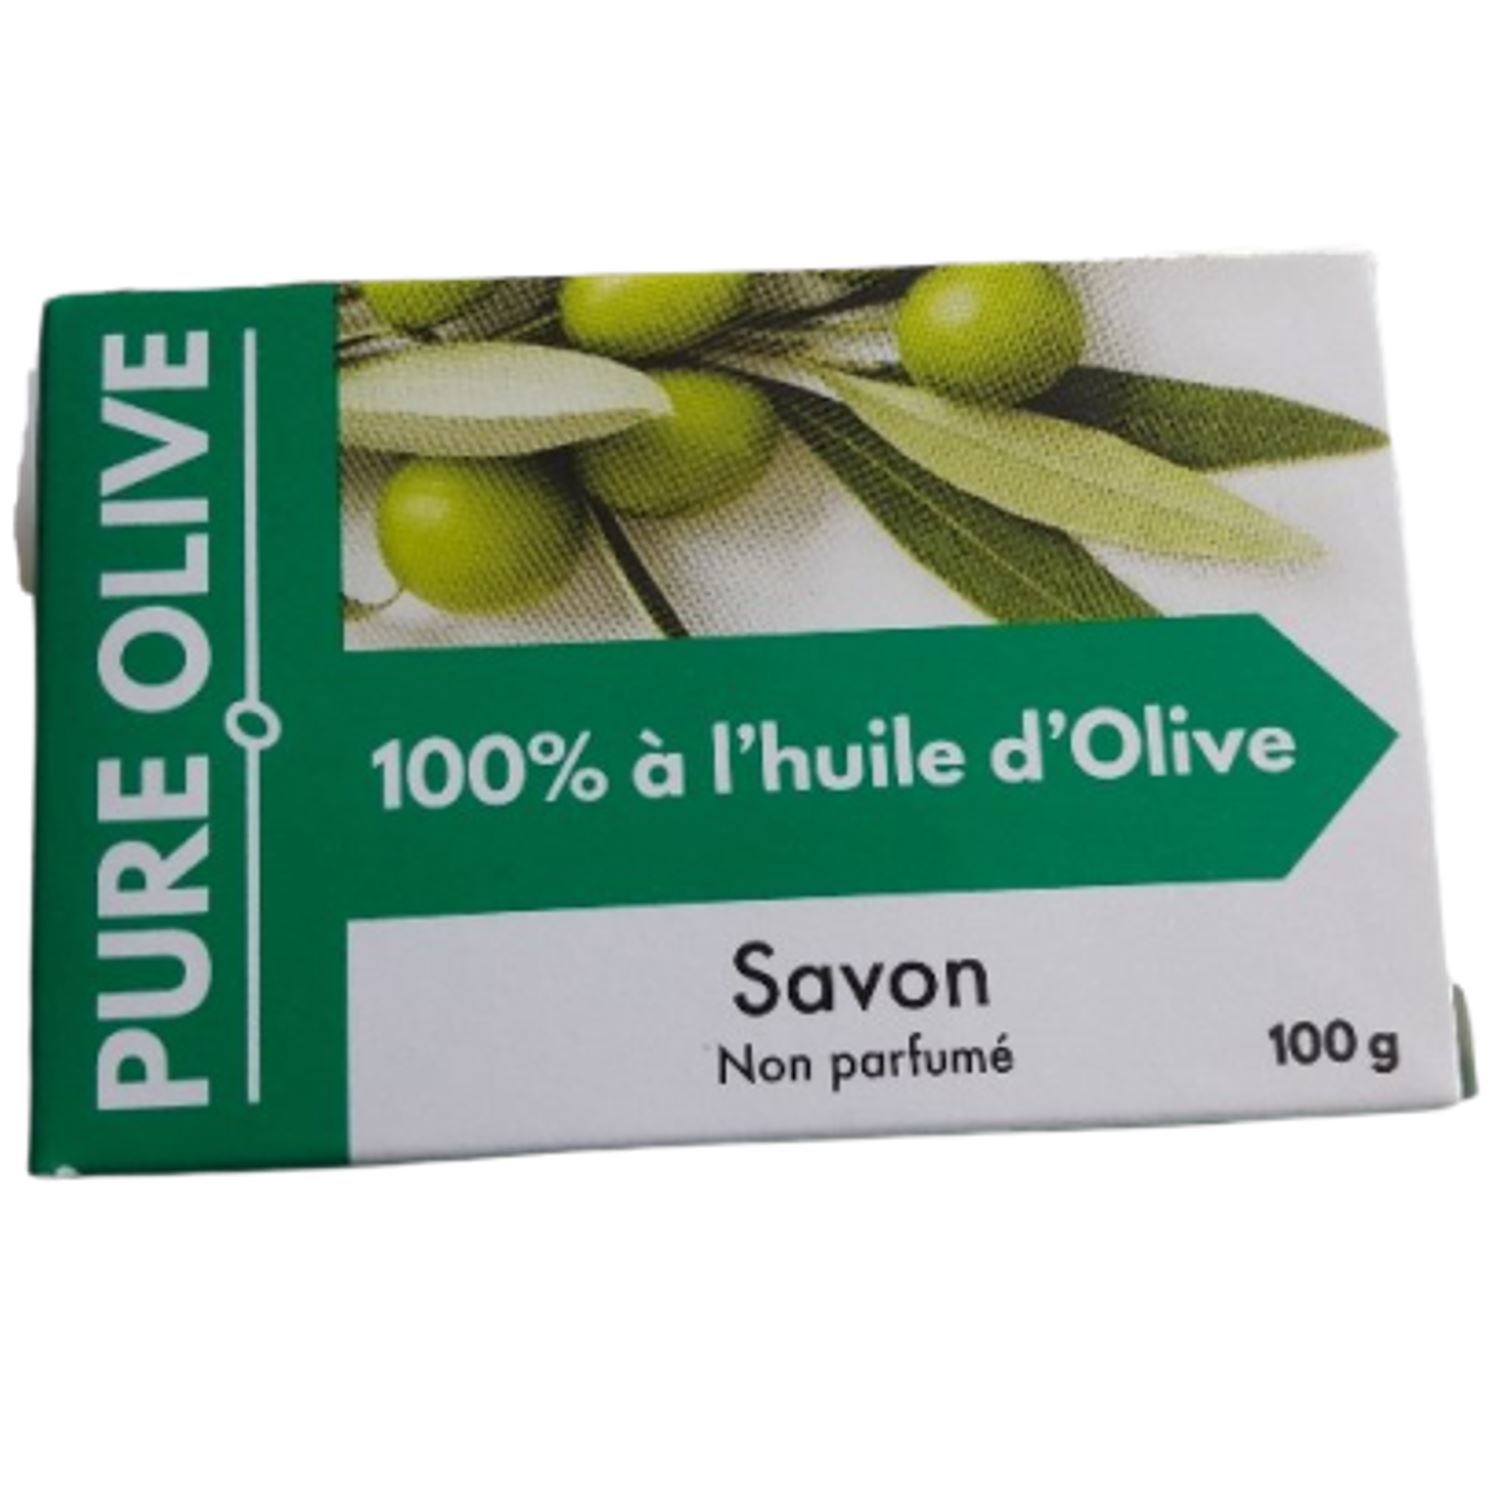 Savon 100% à l'huile d'Olive non parfumé